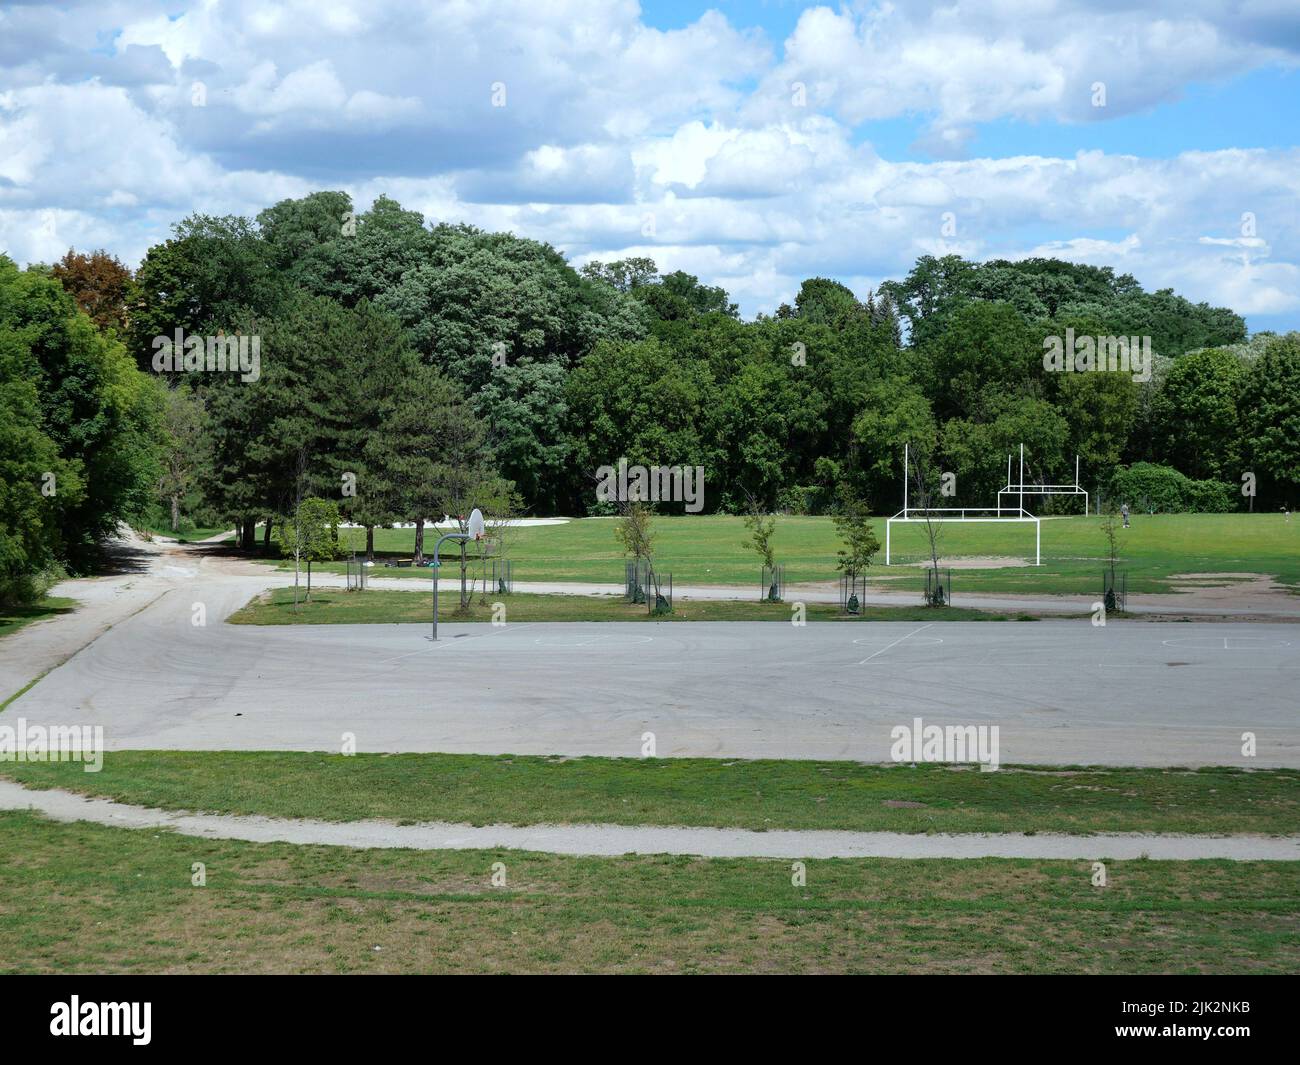 Schulhof-Sportplatz mit Outdoor-Basketballnetz und Fußball- und Fußball-Torpfosten. Stockfoto